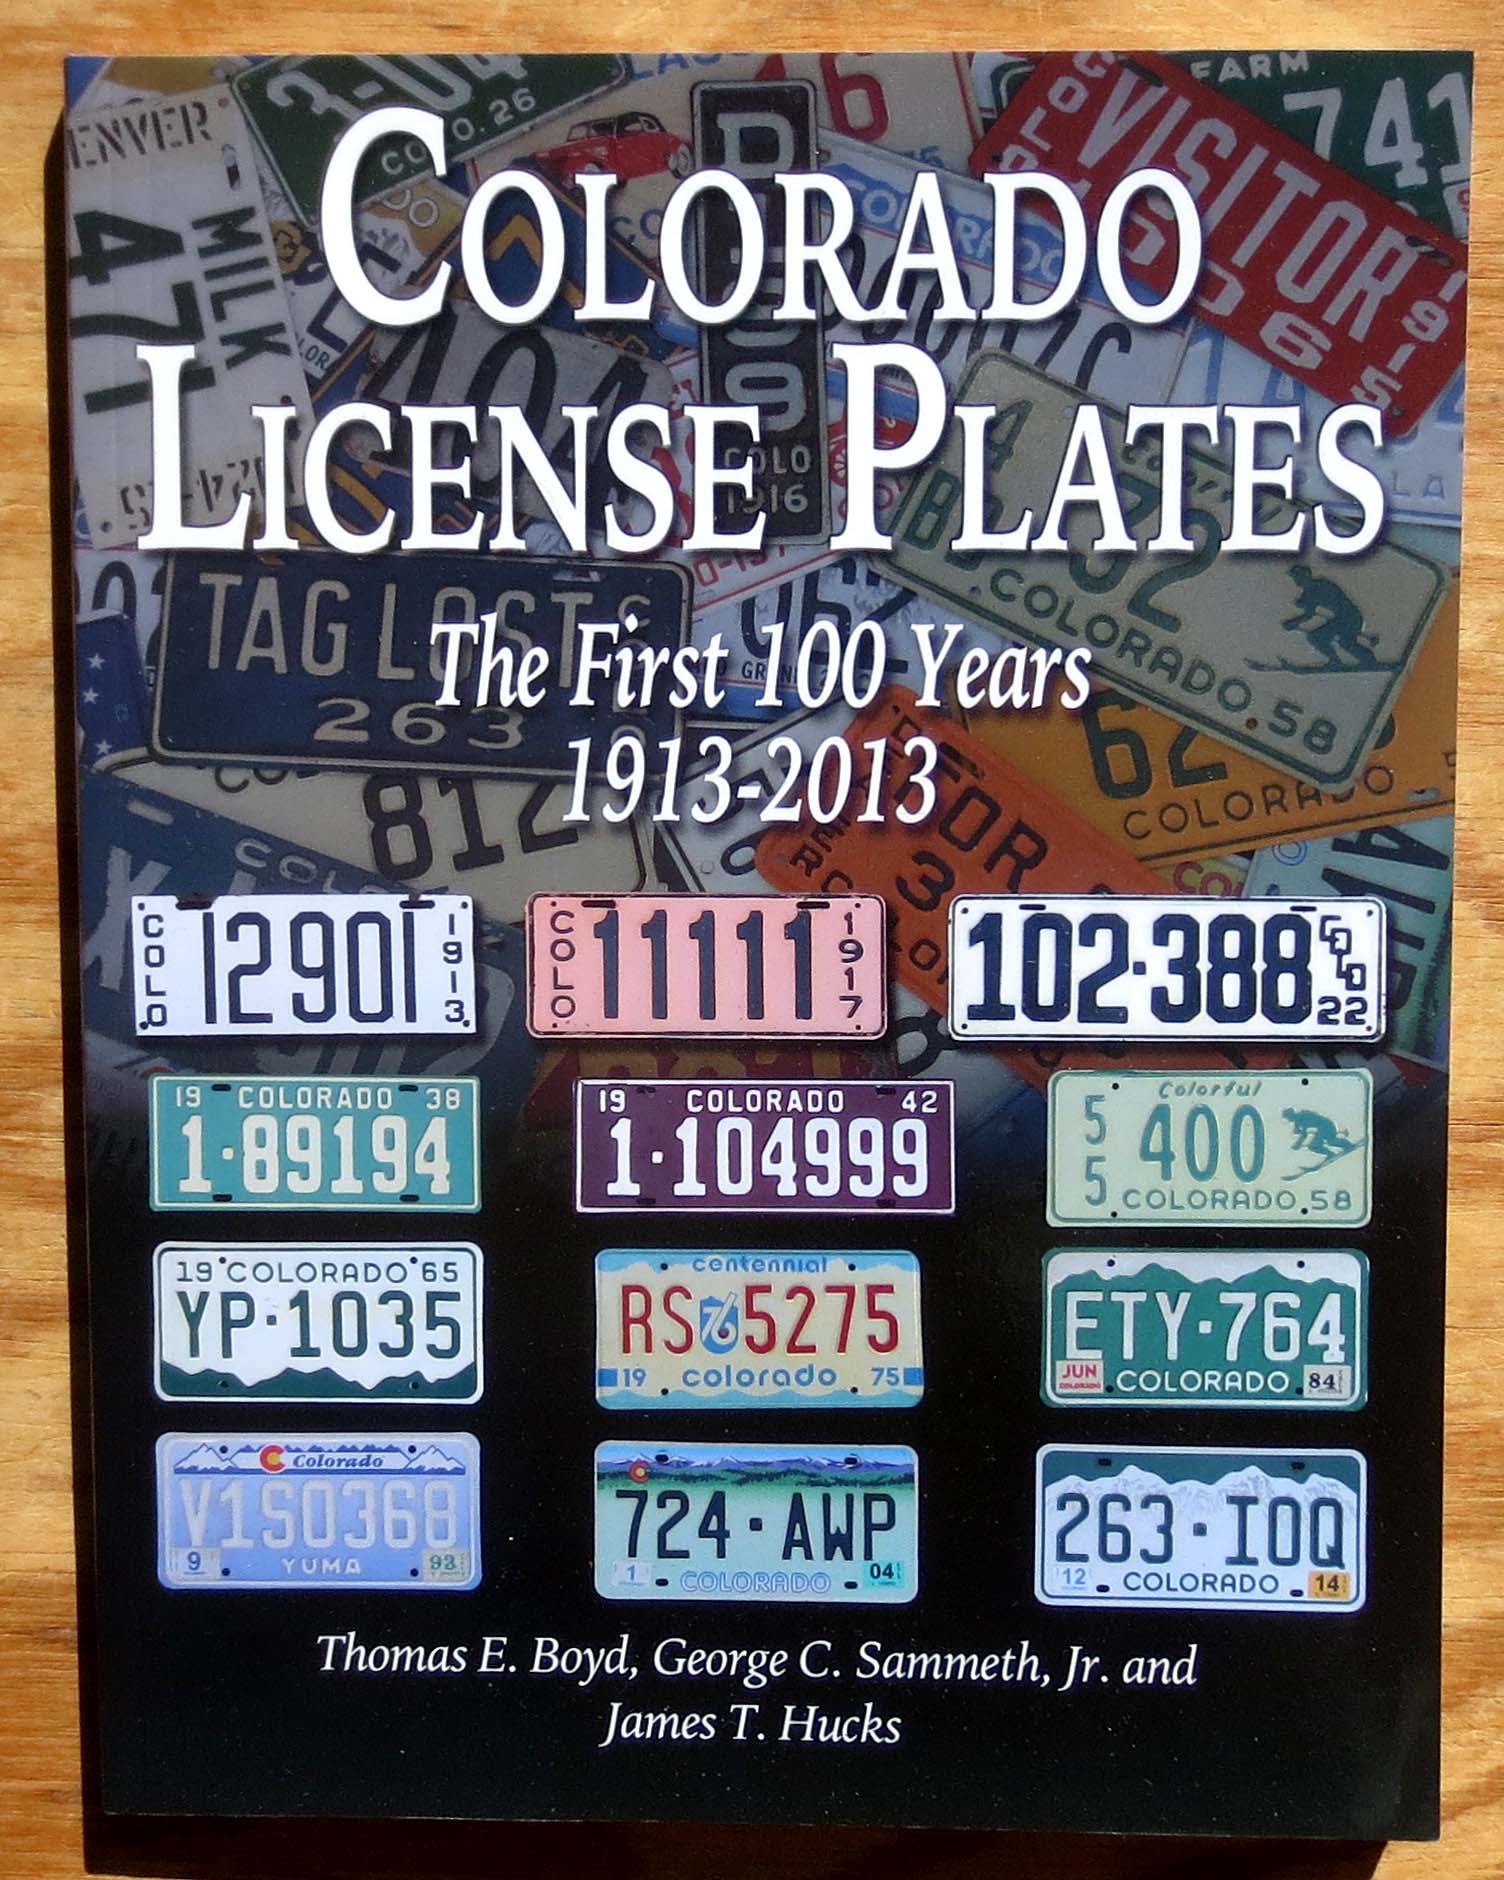 License Plates of Colorado